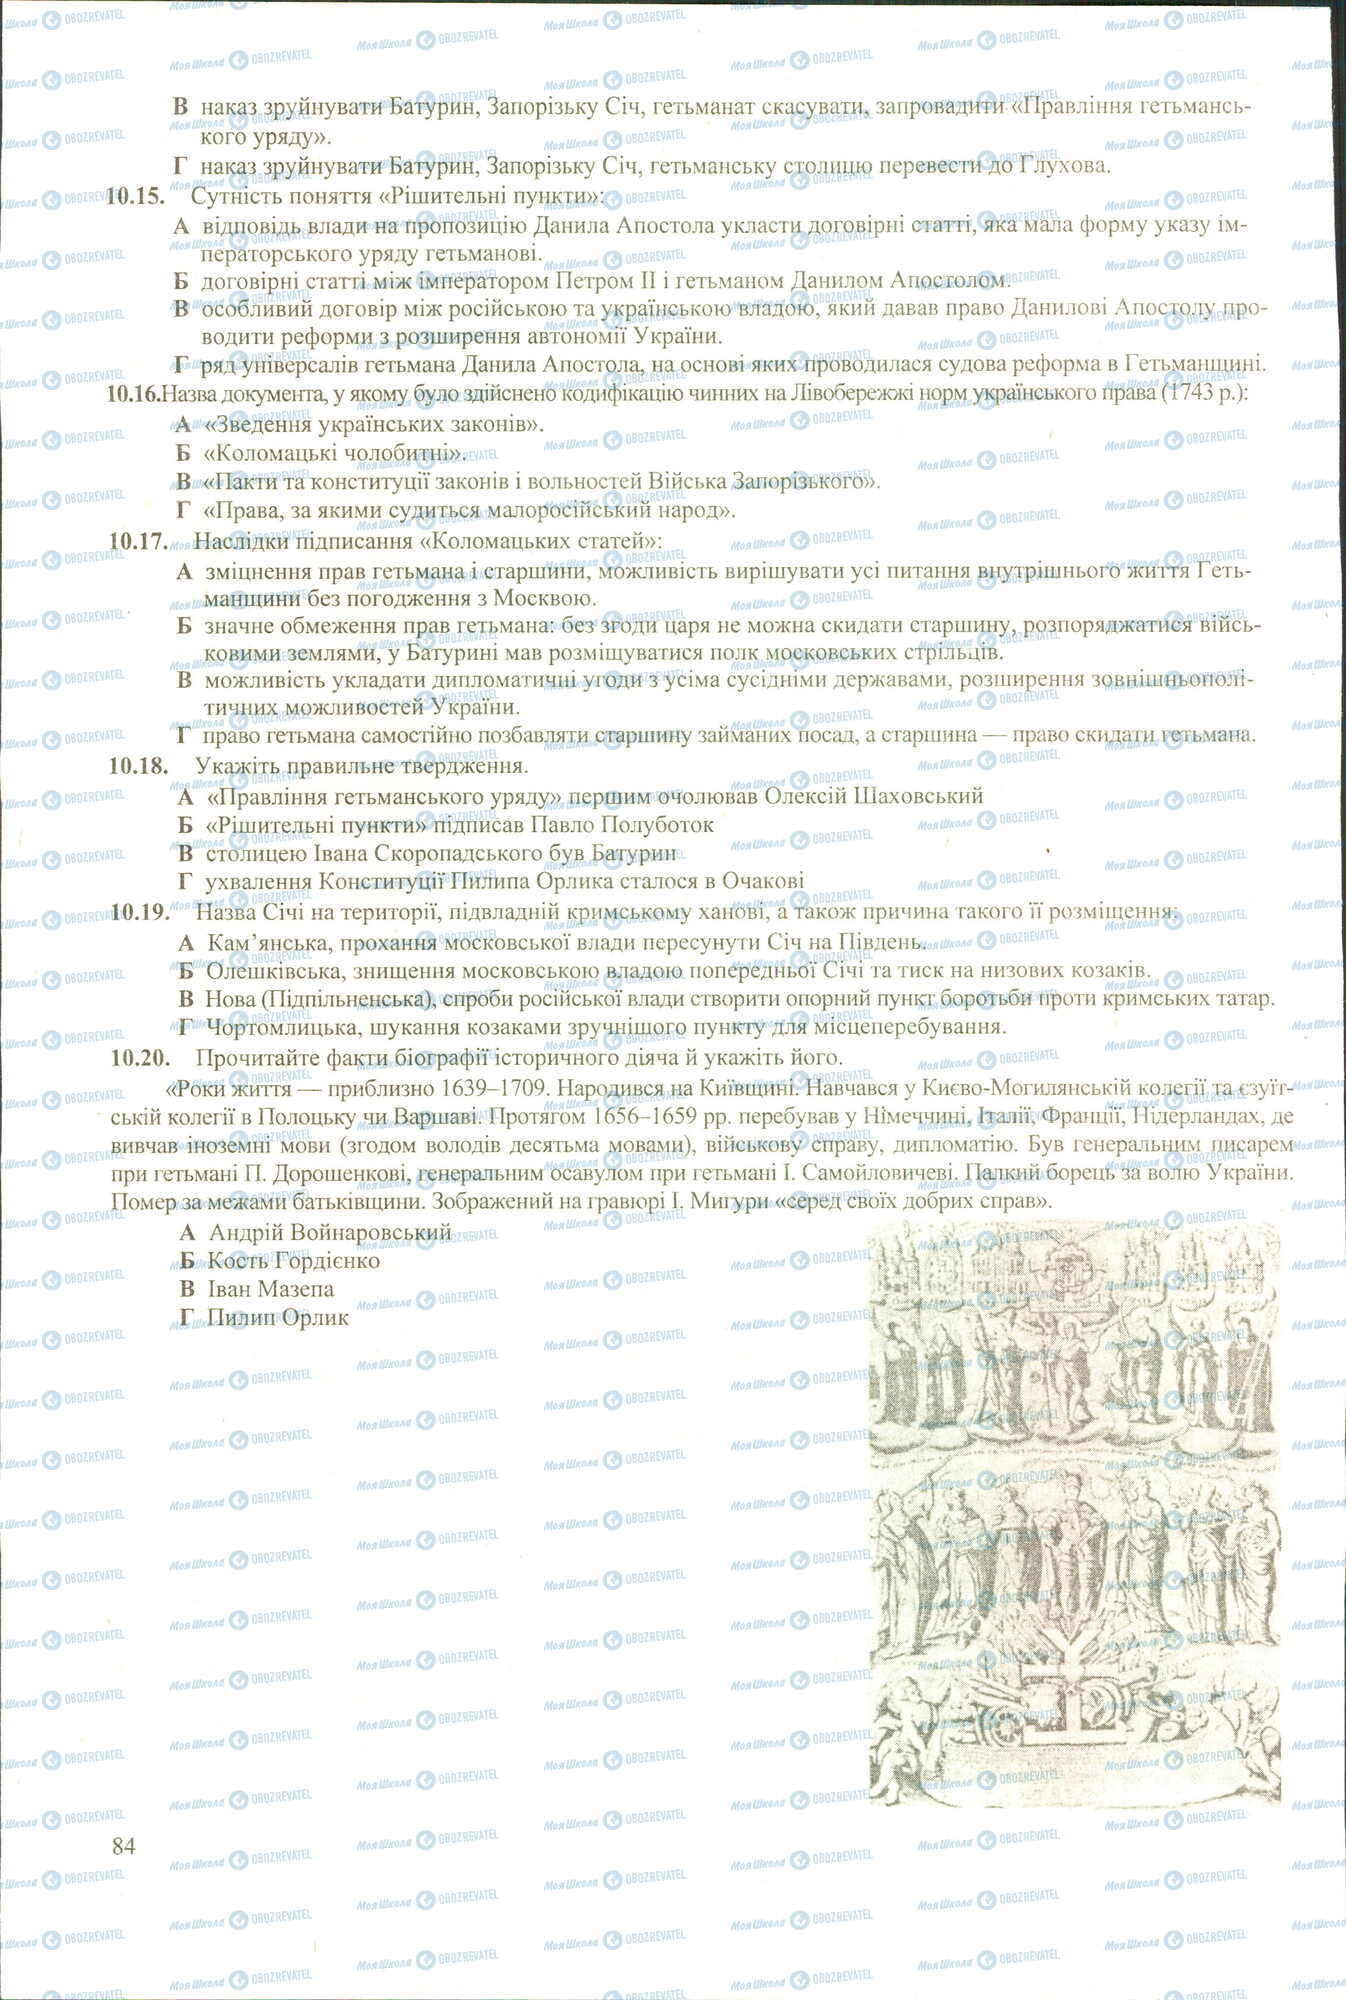 ЗНО История Украины 11 класс страница 15-20